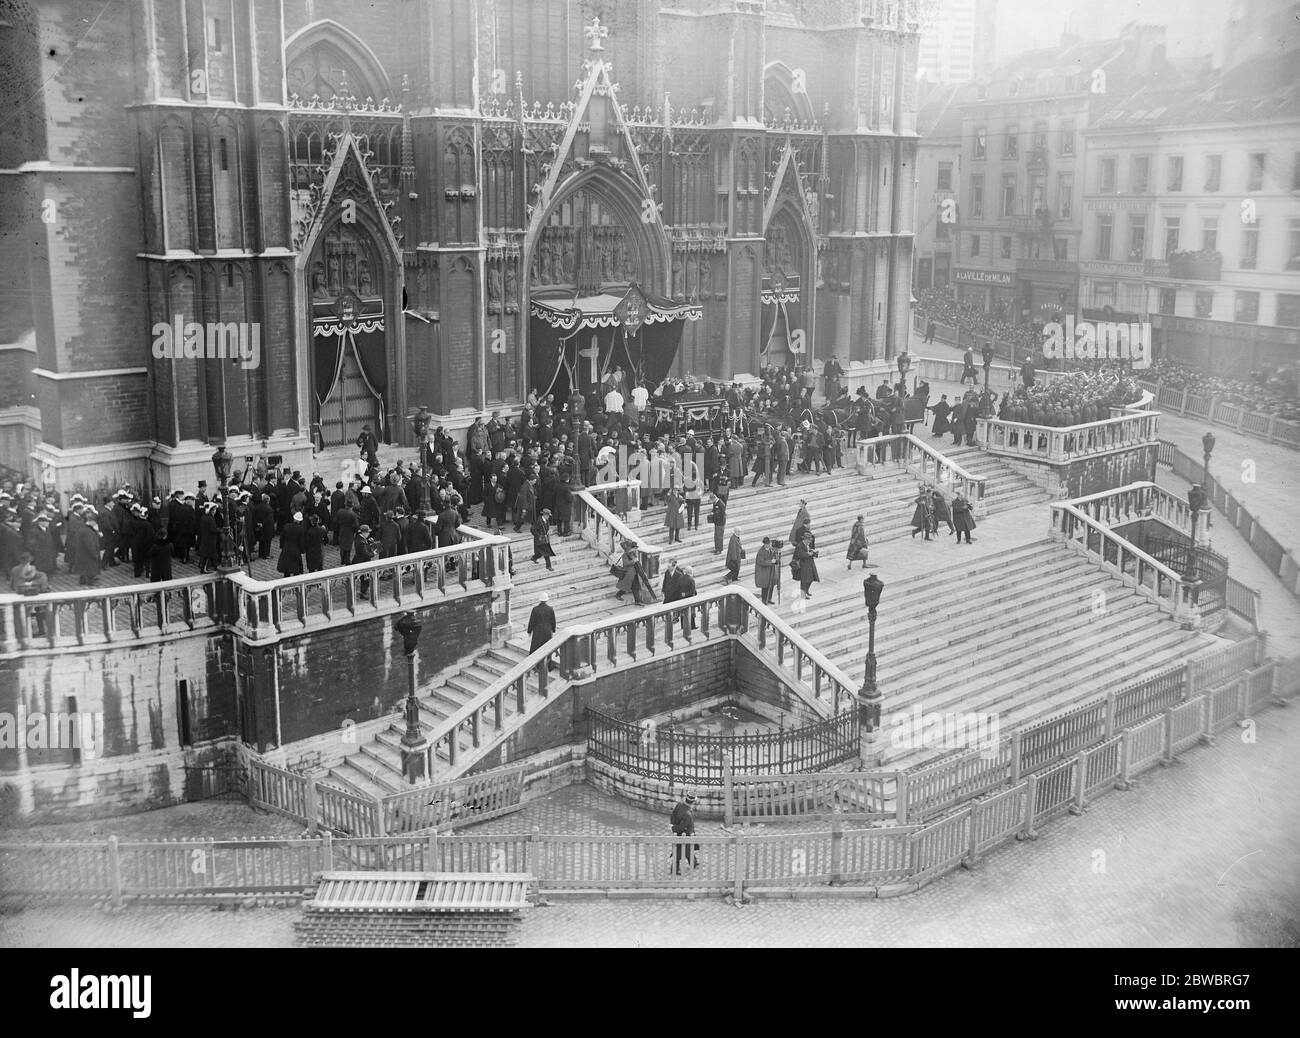 Cardenal Mercier . Impresionante ceremonia funeraria en Bruselas. La llegada a la Catedral de Gudule. 28 de enero de 1926 Foto de stock